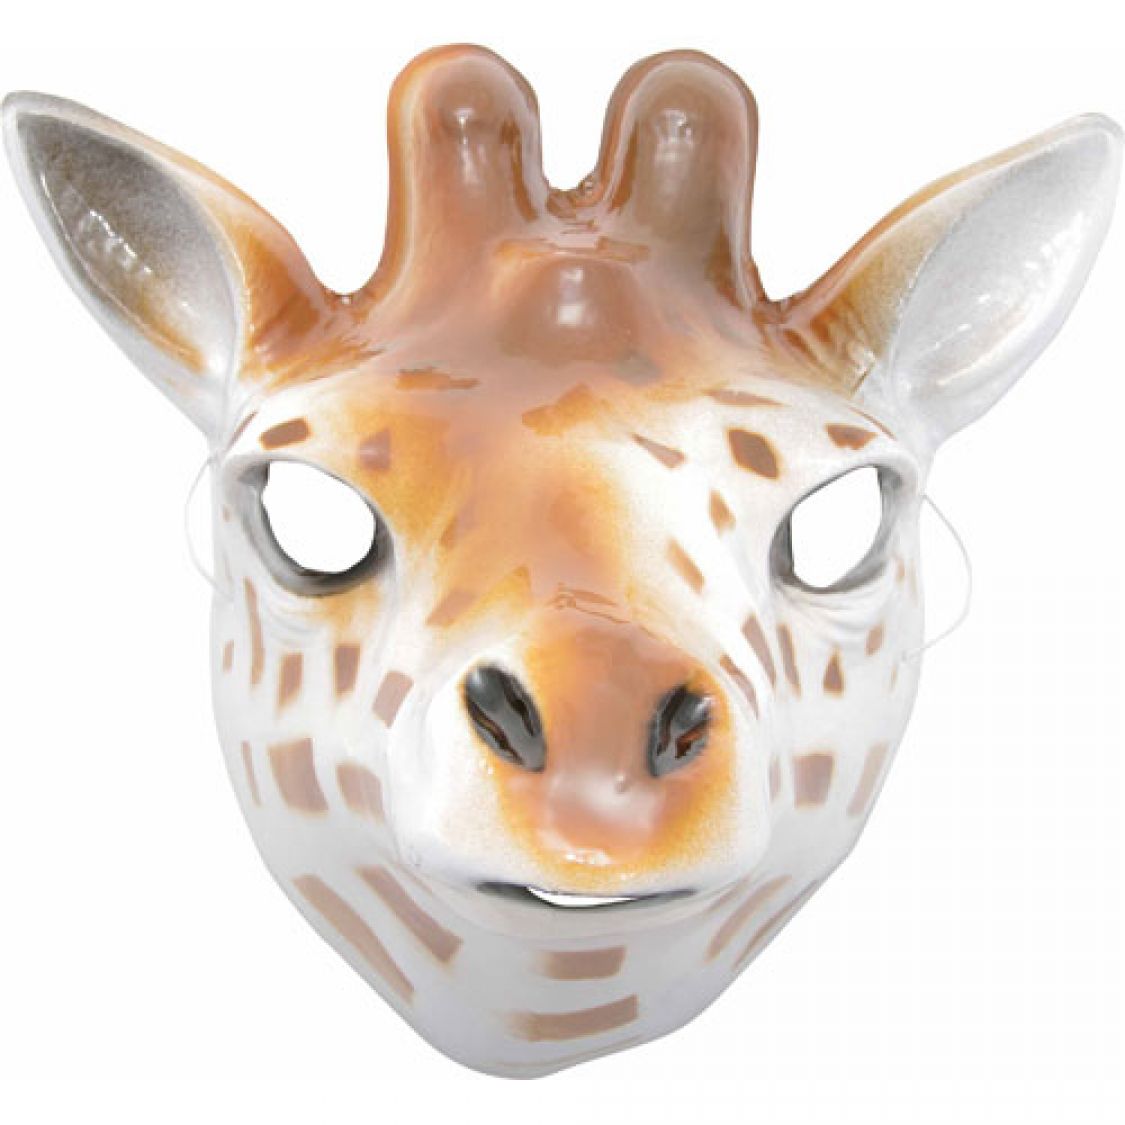 Masque dur enfant -Girafe